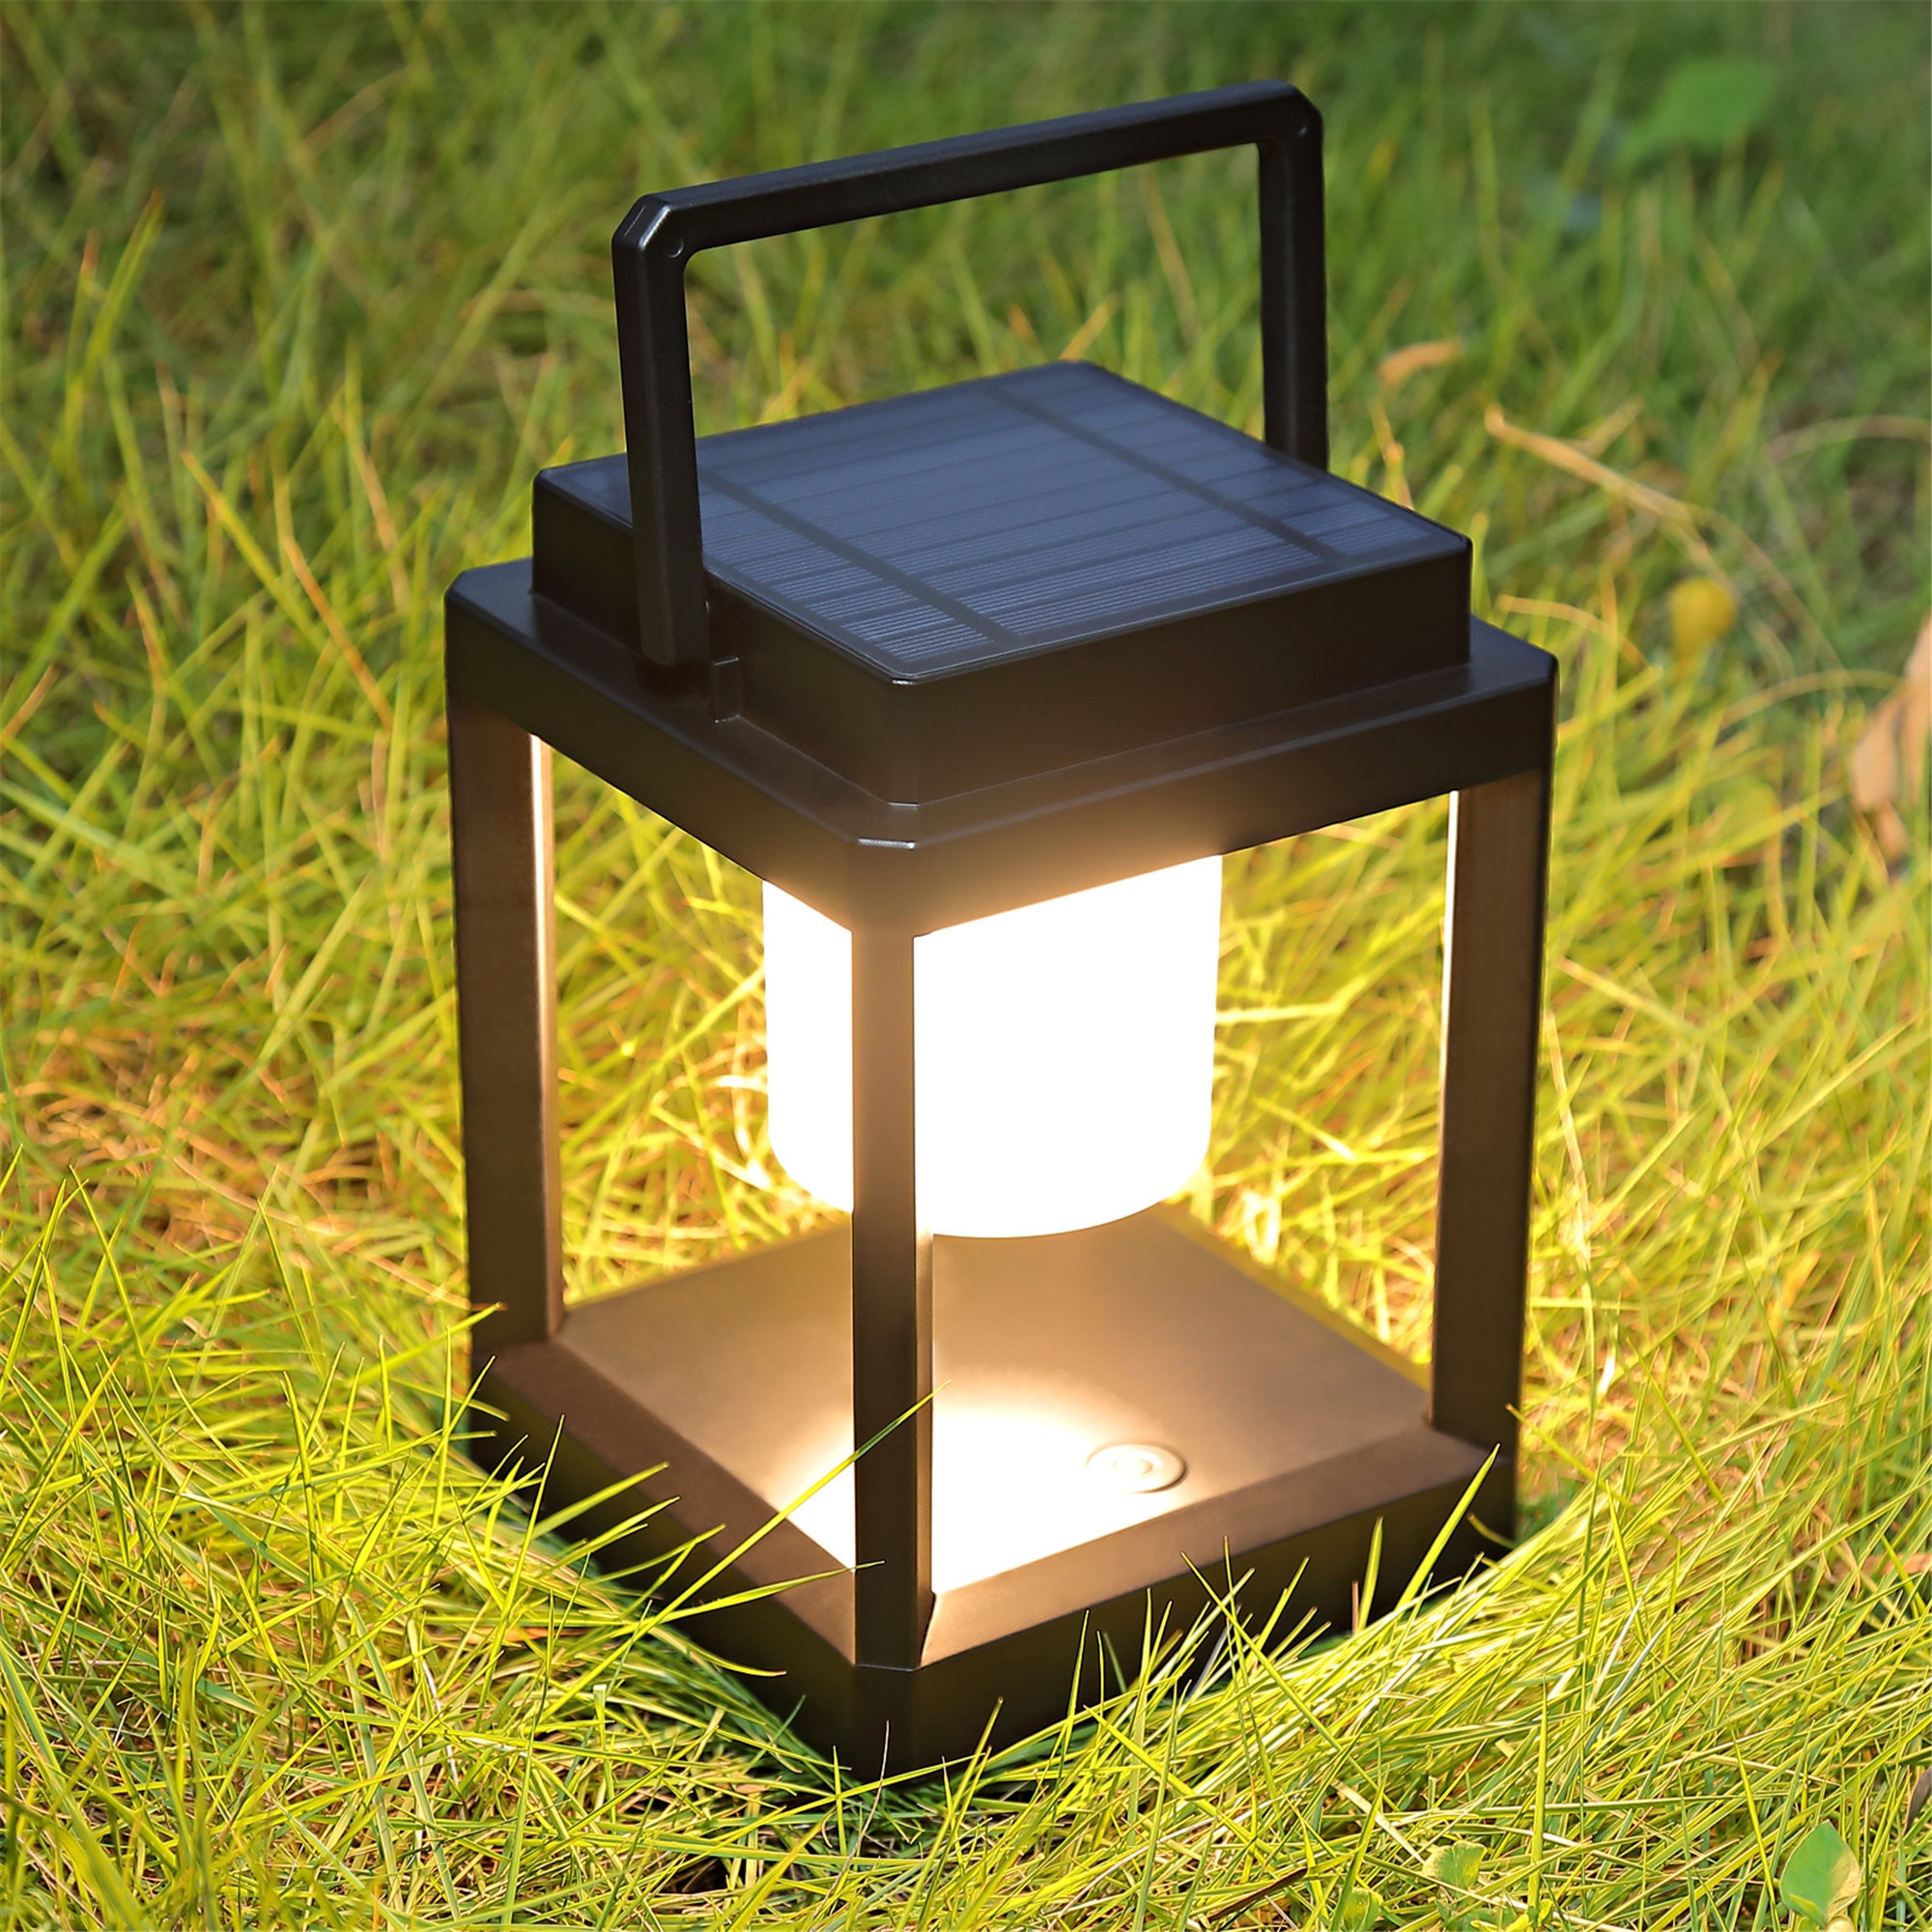 14 Hexagonal Candlelit Iron Lantern with LED Lights Black/White - Alpine Corporation